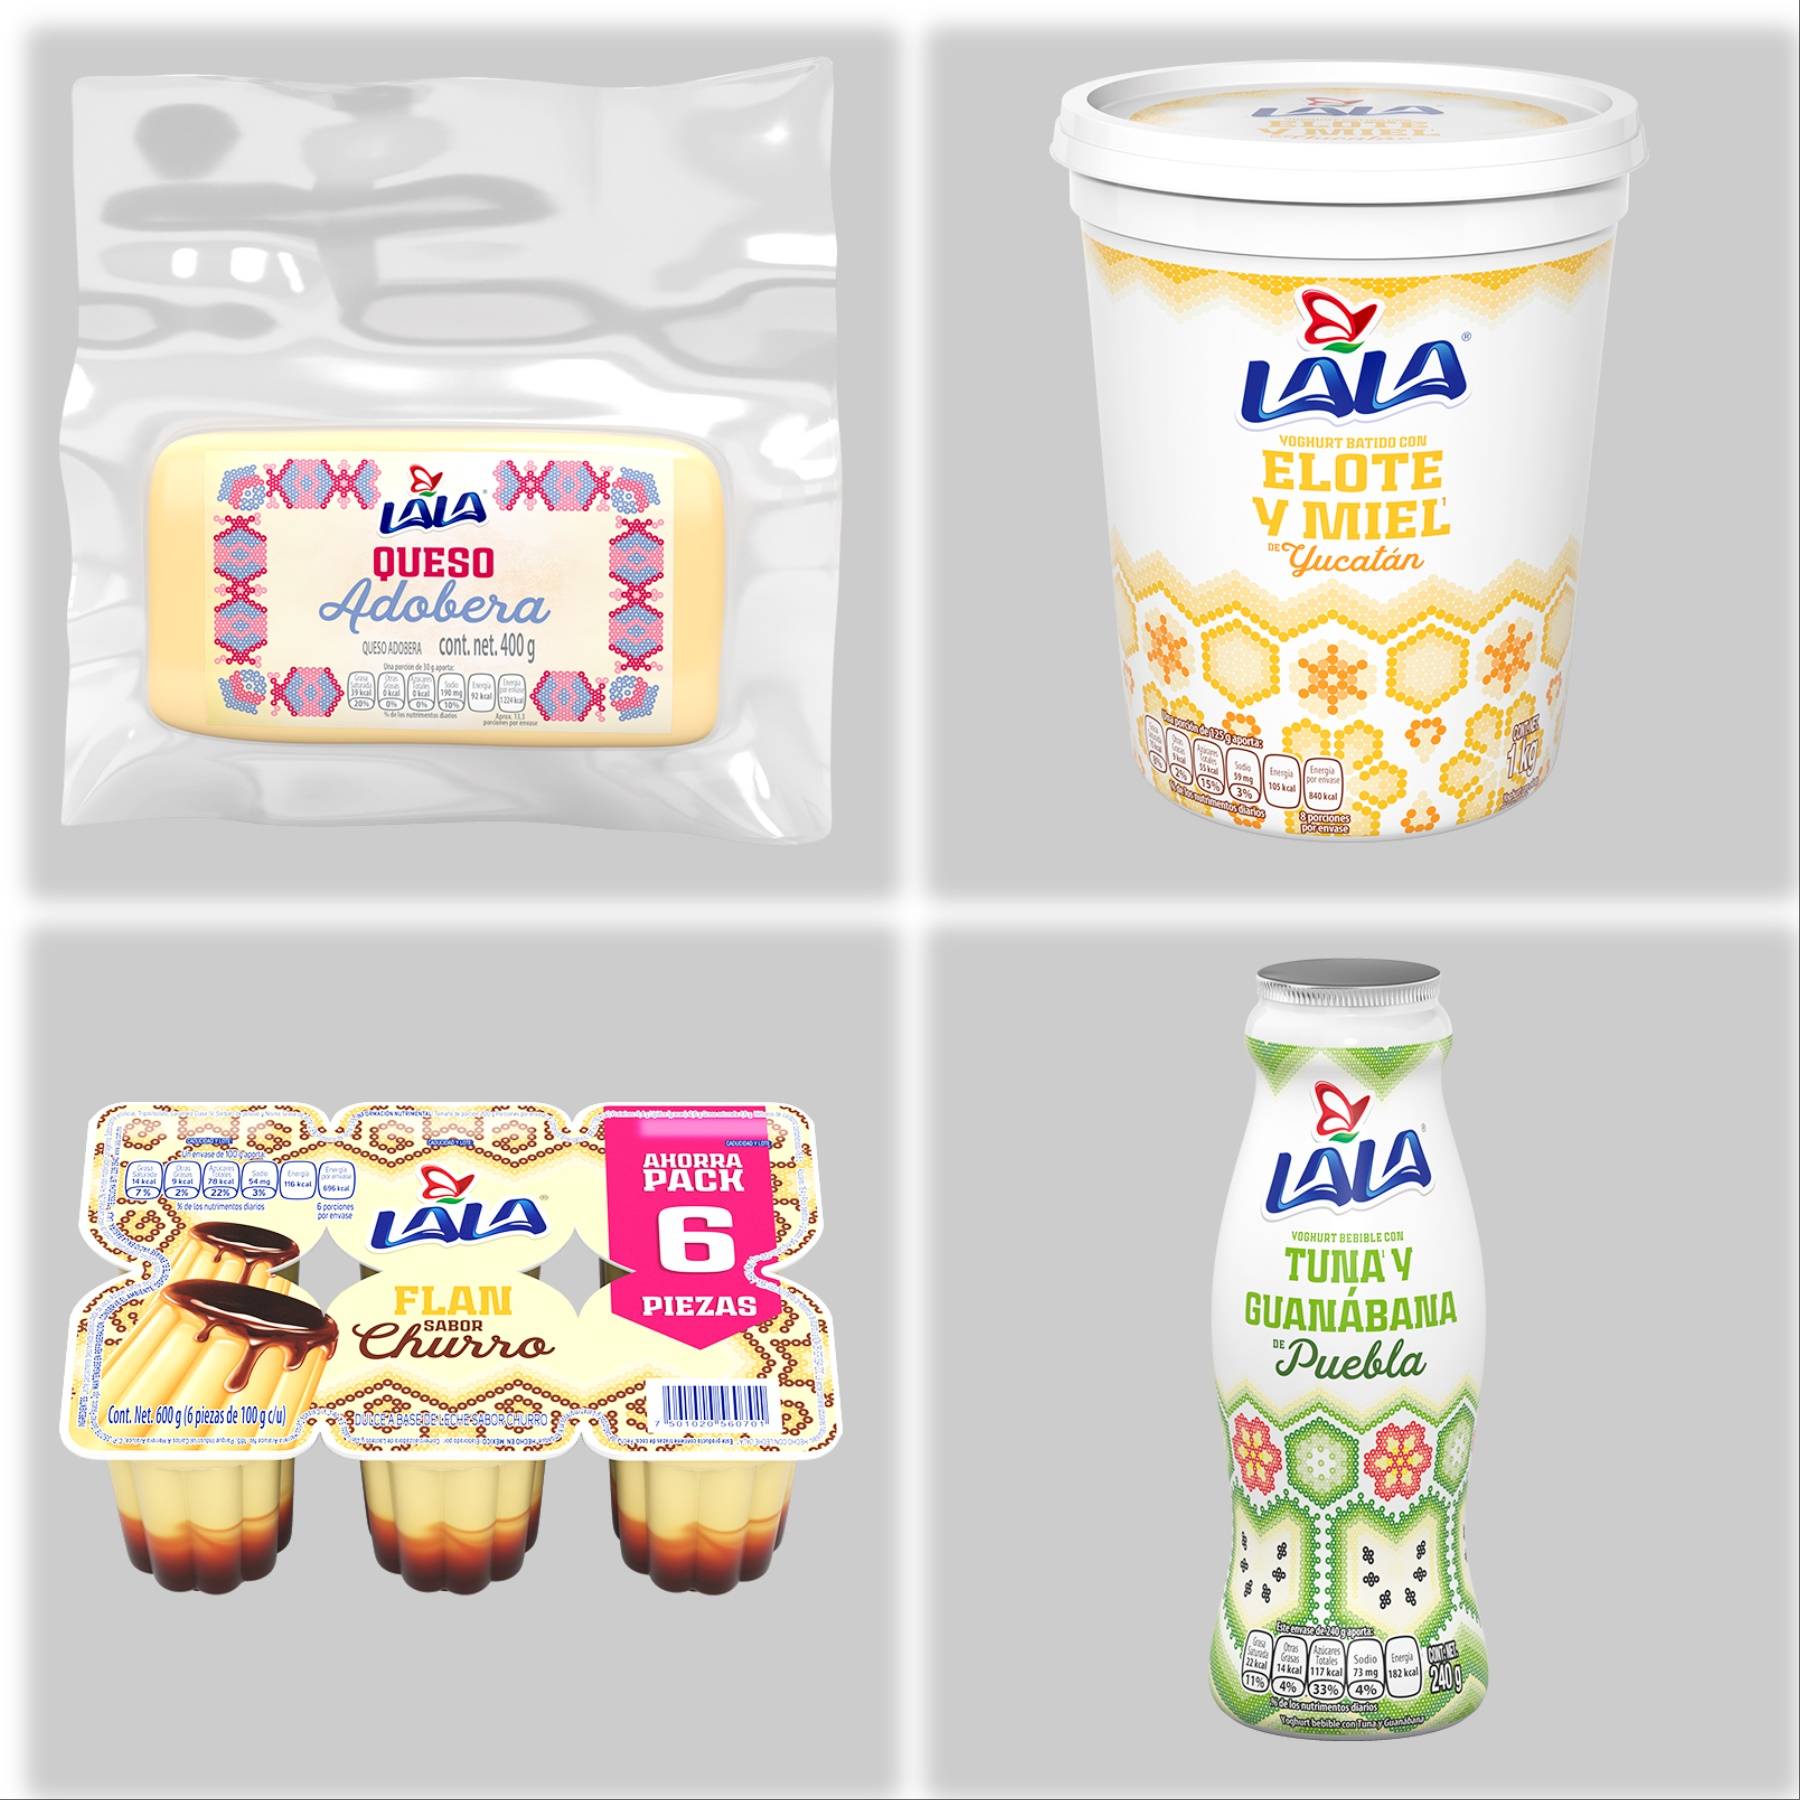 Venderá Lala yogures con todo el sabor de Yucatán